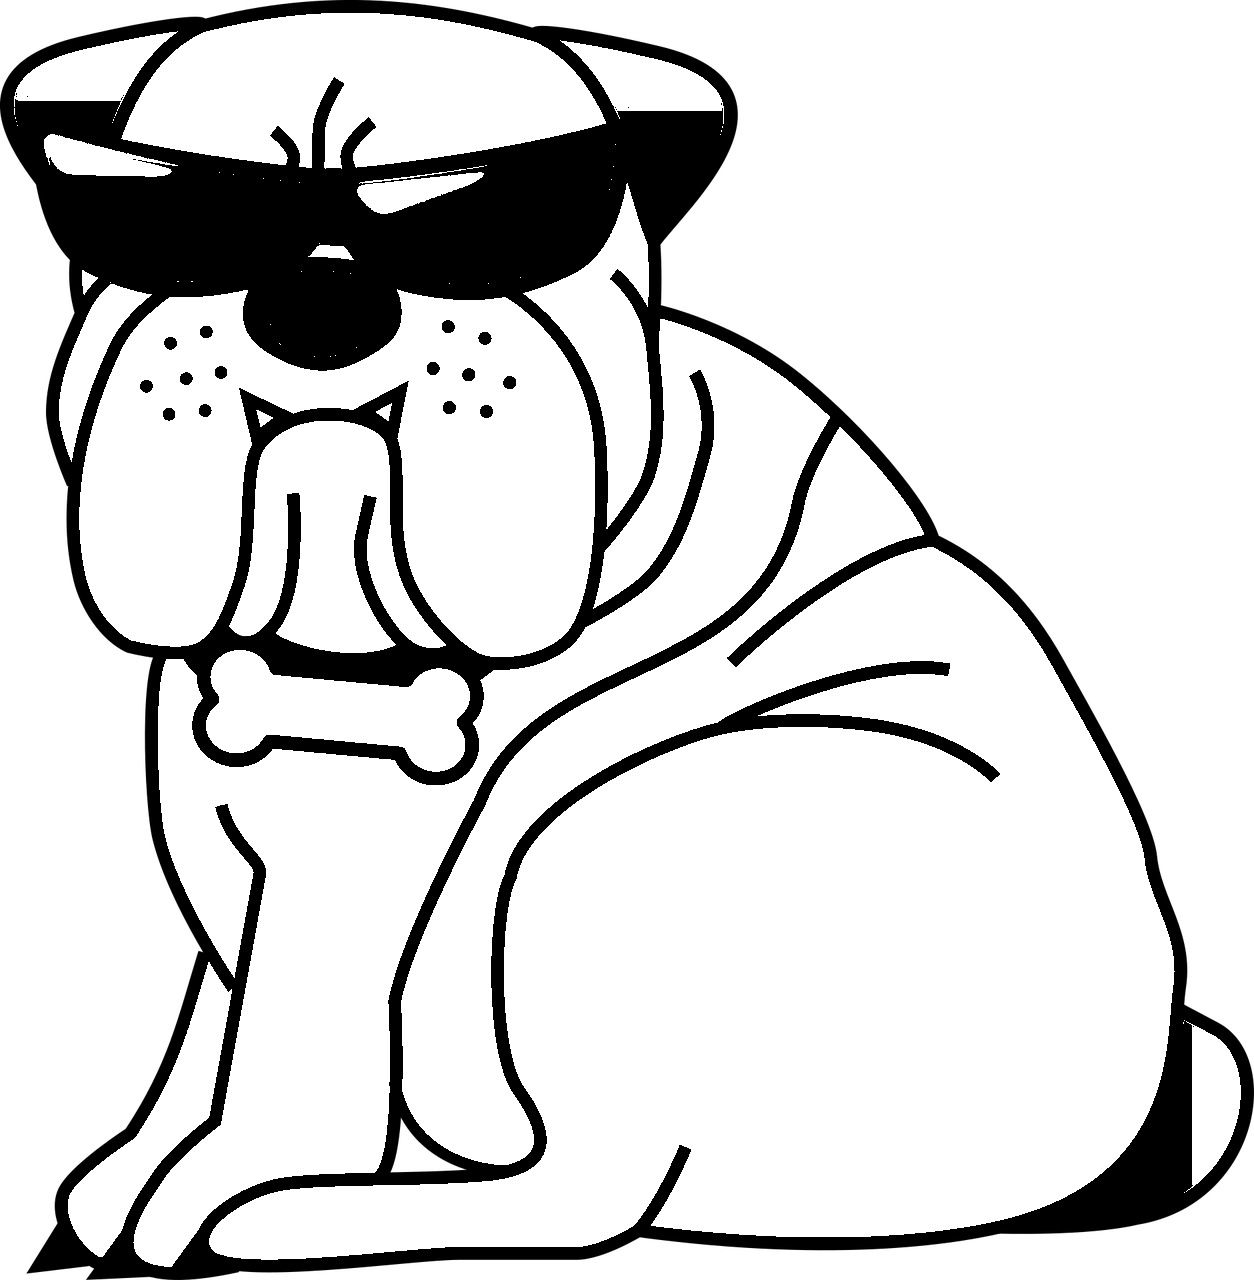 Disegno da colorare di cane umoristico bulldog con occhiali scuri